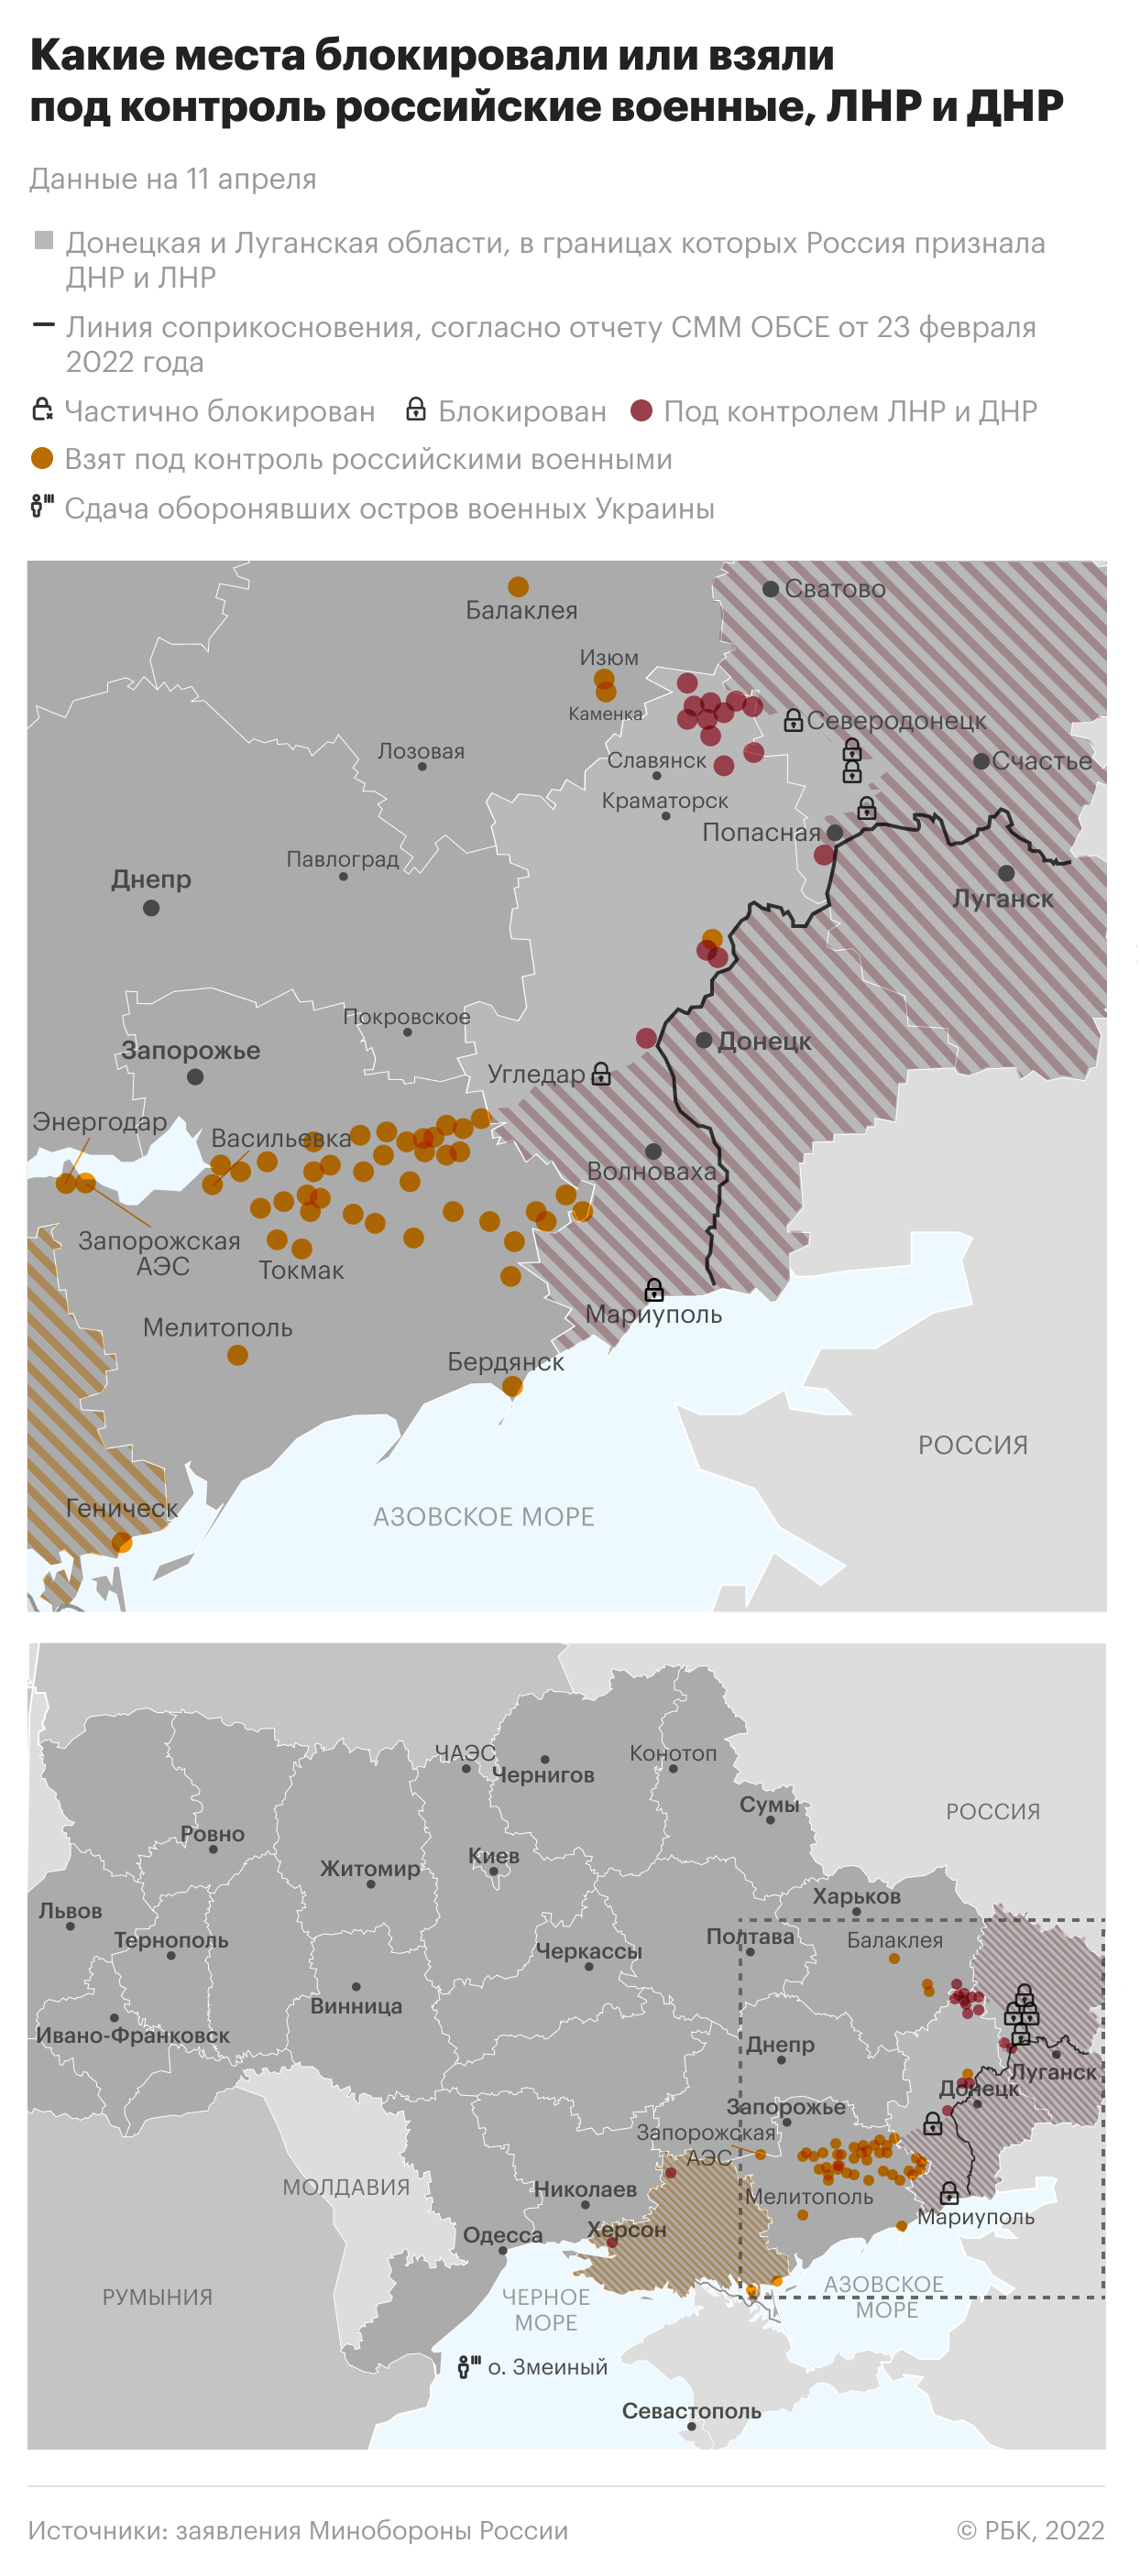  Военная операция на Украине. Главное 